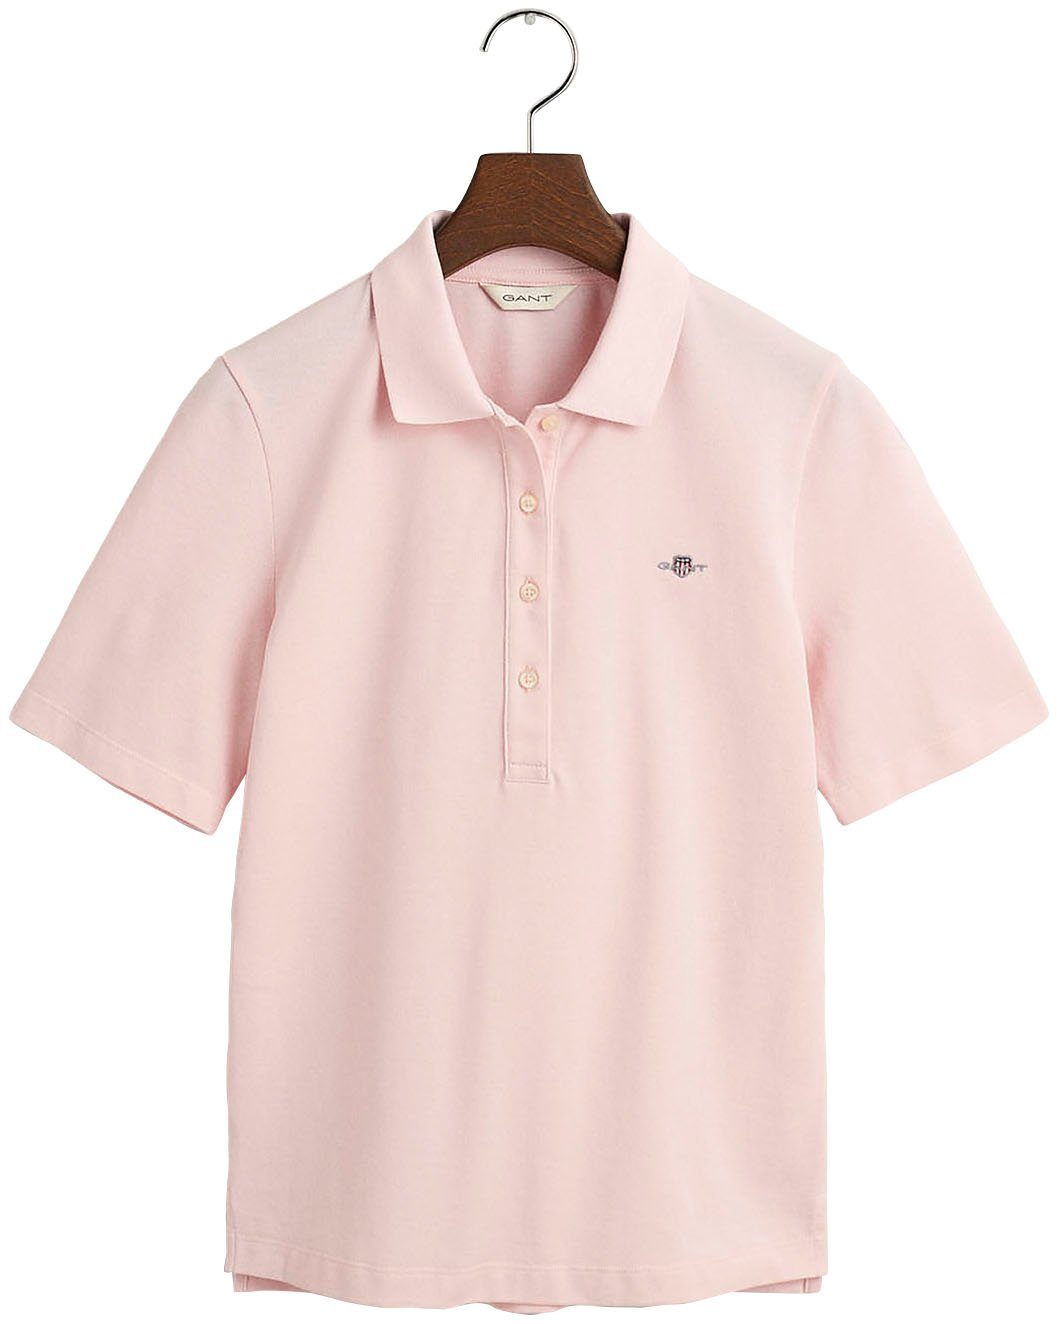 KA POLO SLIM der PIQUE Gant auf pink faded mit SHIELD Brust Logostickerei Poloshirt grafischer